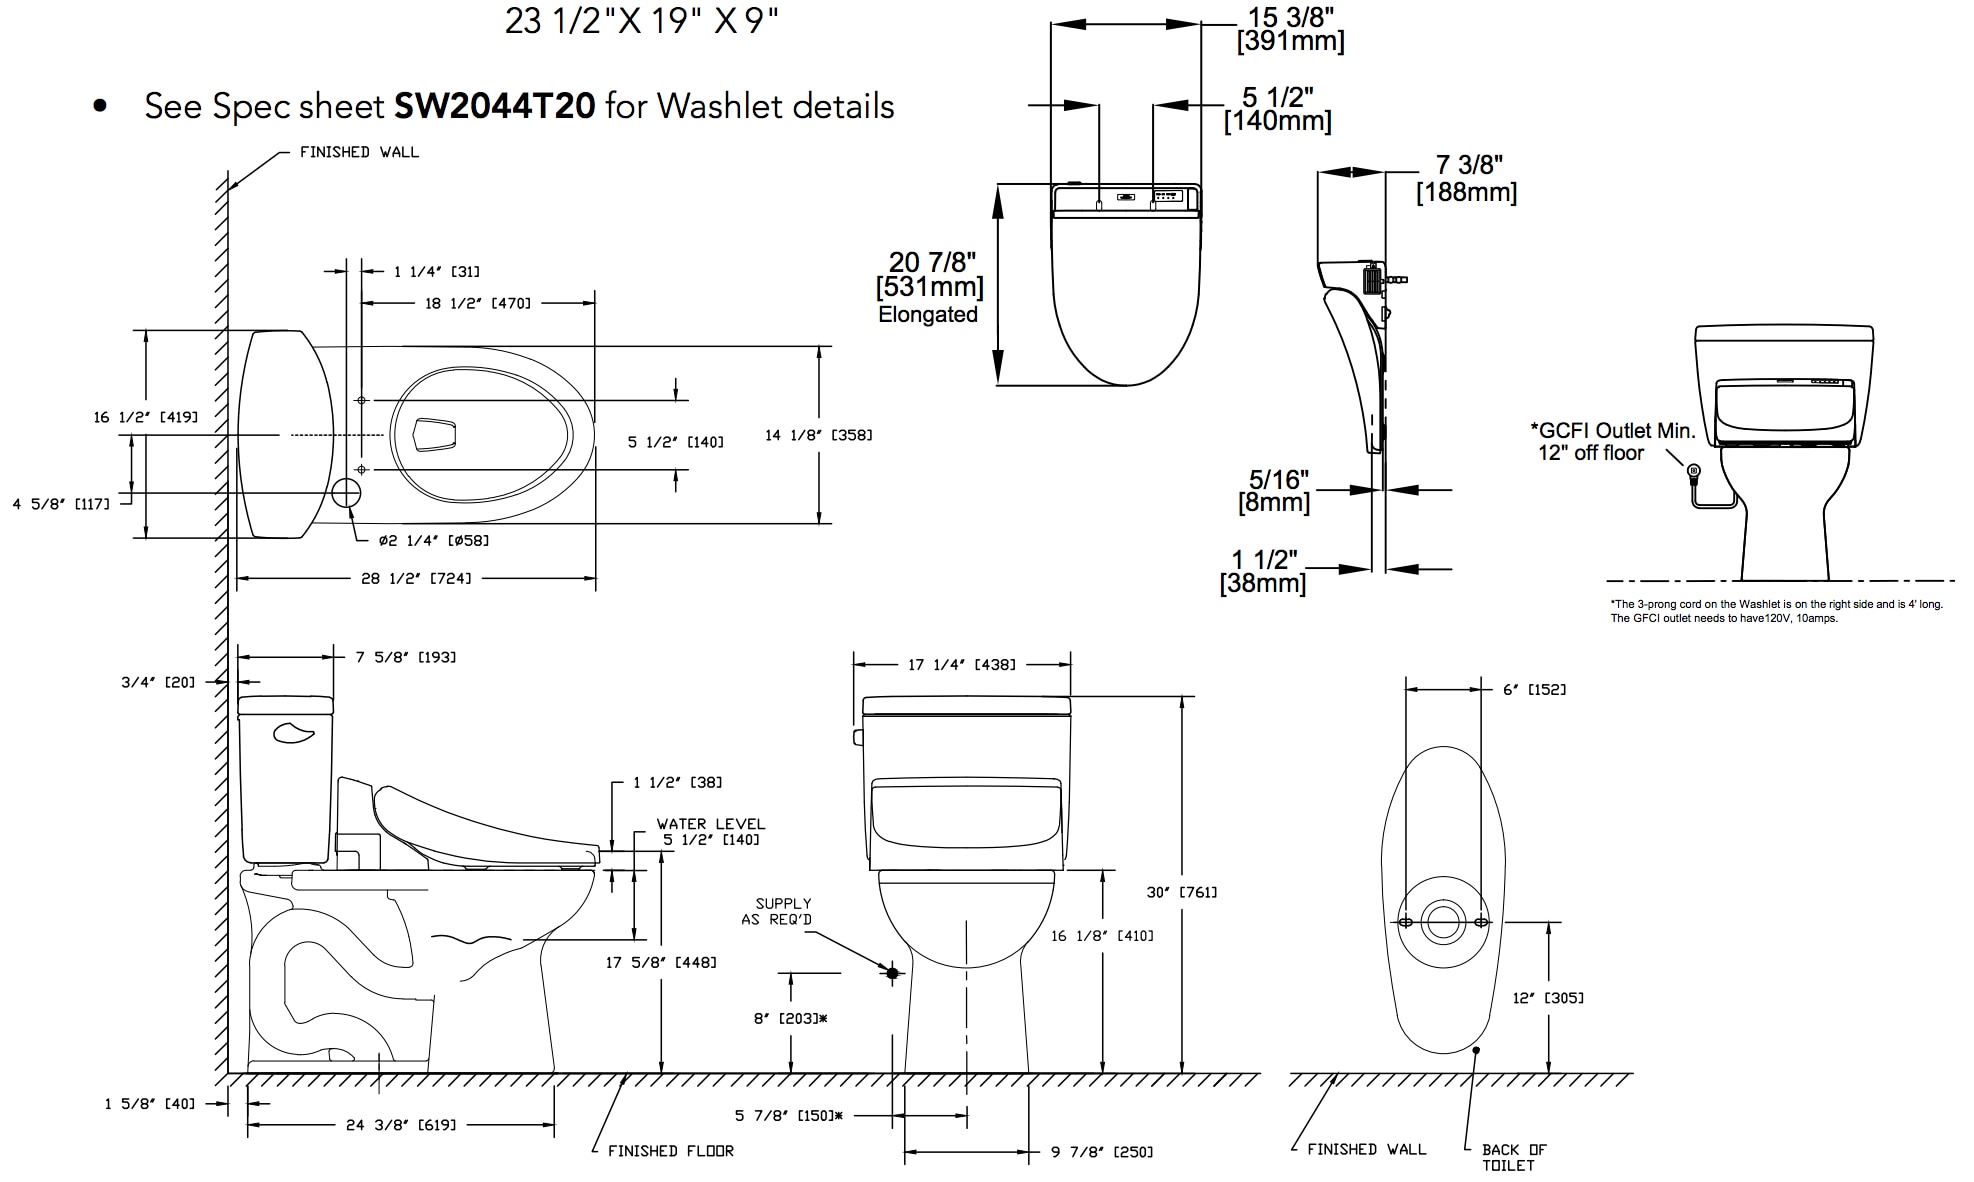 drake-ii-washlet-c200-two-piece-toilet-1.28-gpf-diagram.png